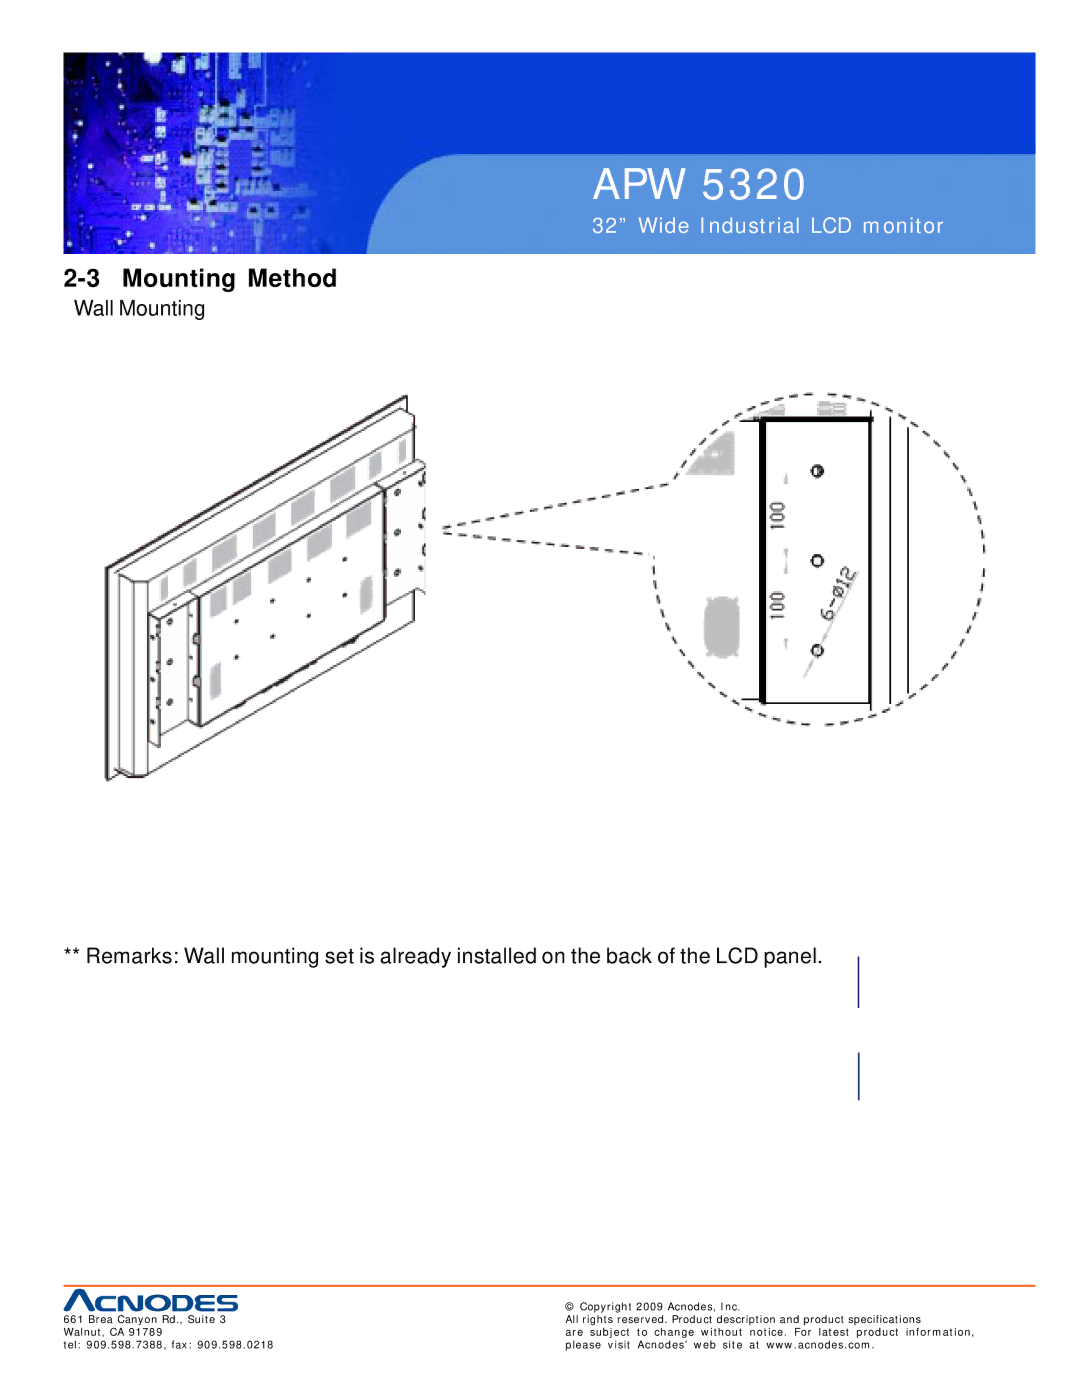 Acnodes APW 5320 user manual Mounting Method 